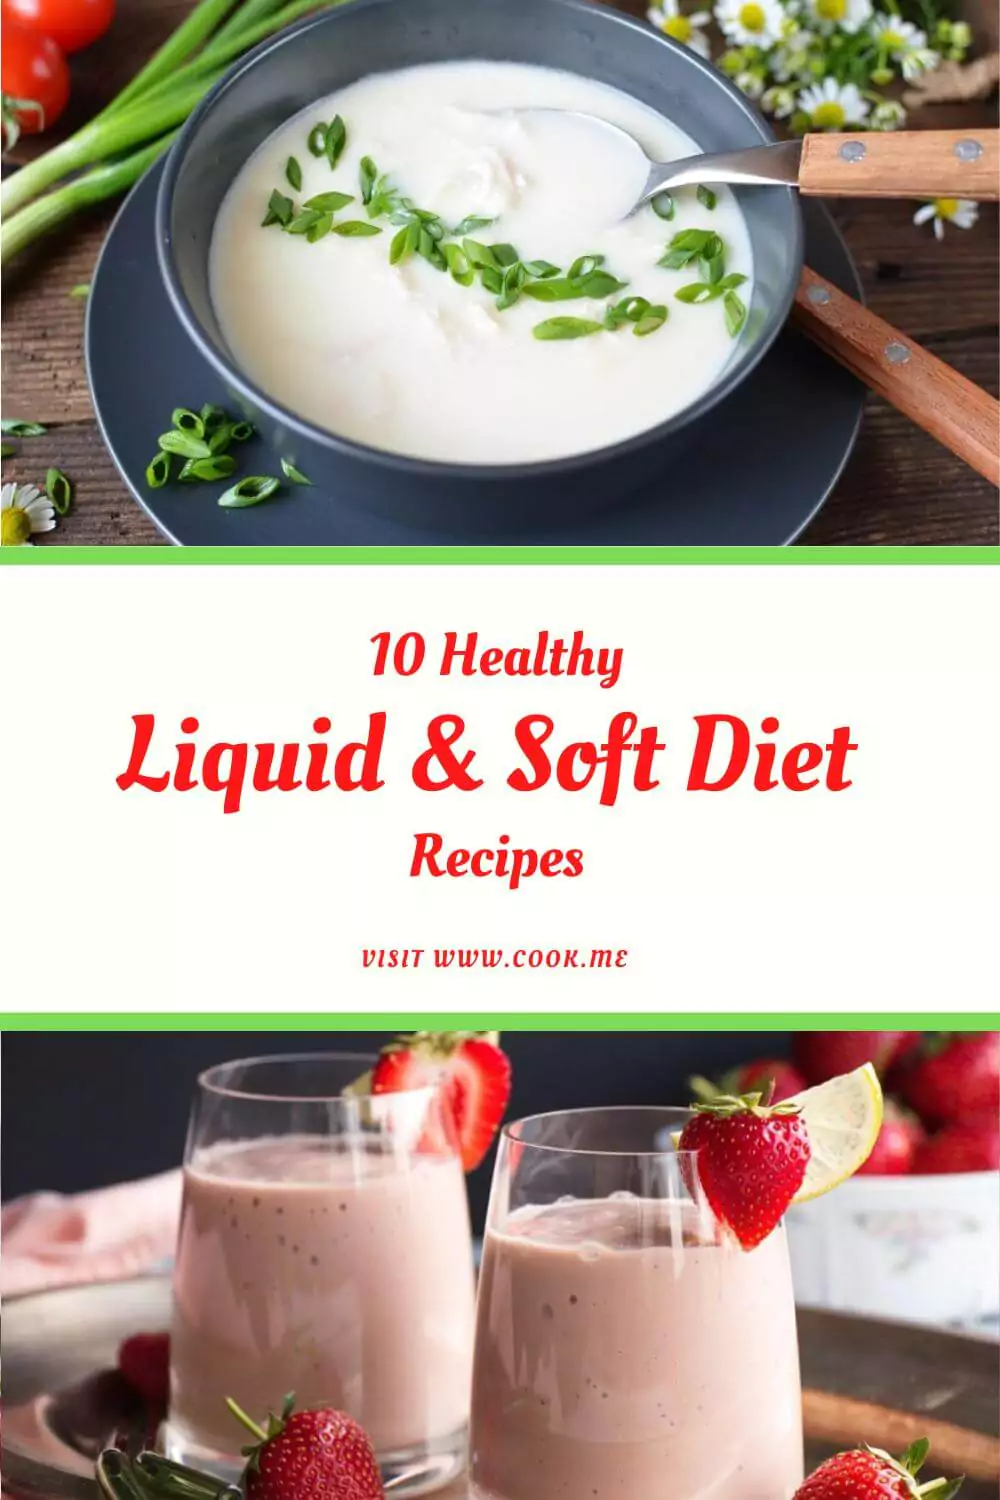 Healthy Liquid & Soft Diet Recipes -  Recipes